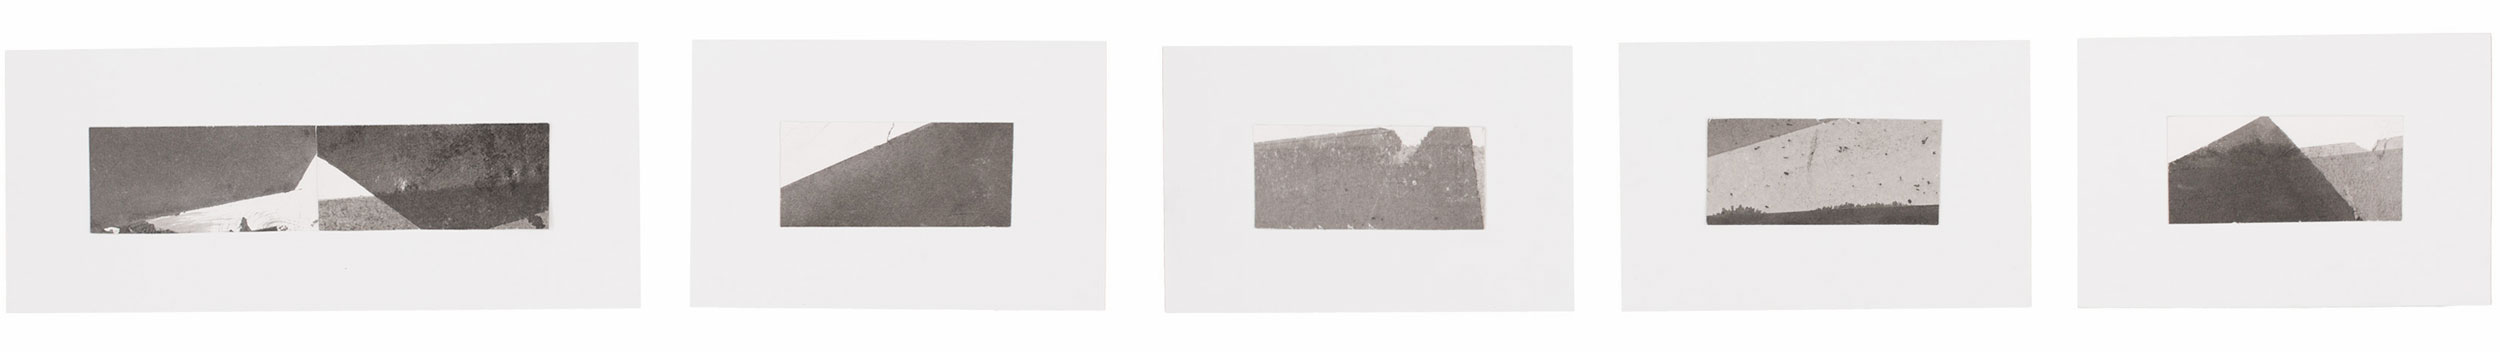   Sem Título, 2016. Série Possíveis Paisagens I. Nanquim e grafite sobre papel. Cada (1o ) 26 x 6 cm | 36 x 15 cm (Paspatur) | (Outros) 13 x 6 cm | 23 x 15 cm (Paspatur) 1,50 x 15 cm (Conj.&nbsp;de 5 imgs.)    Untitled, 2016. Serie Possíveis Paisagen